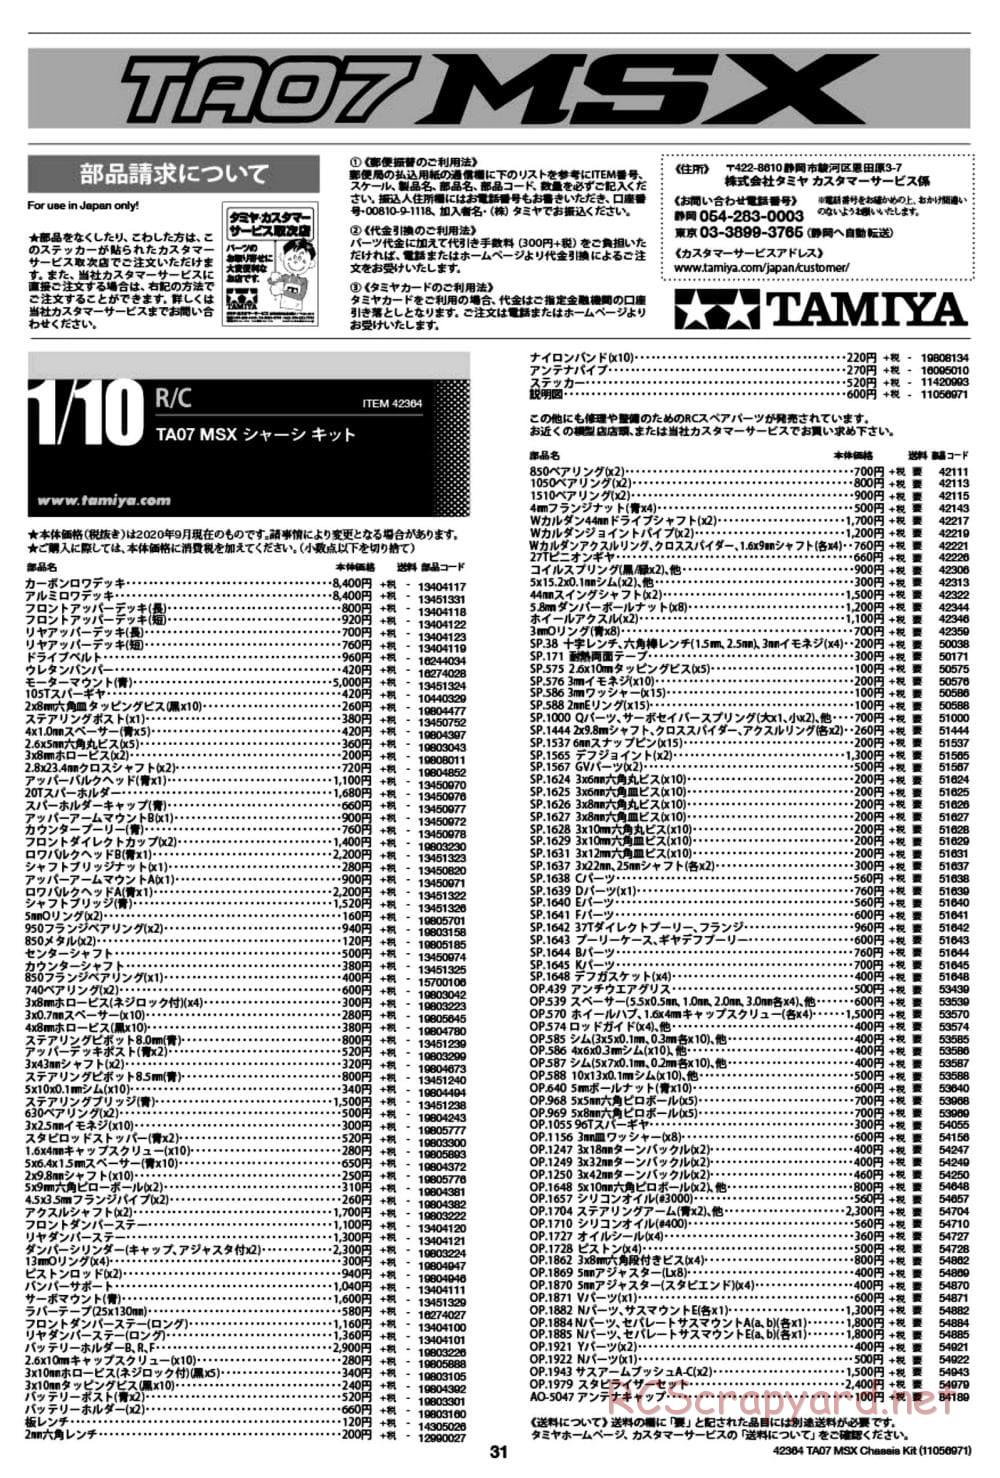 Tamiya - TA07 MSX Chassis - Manual - Page 31